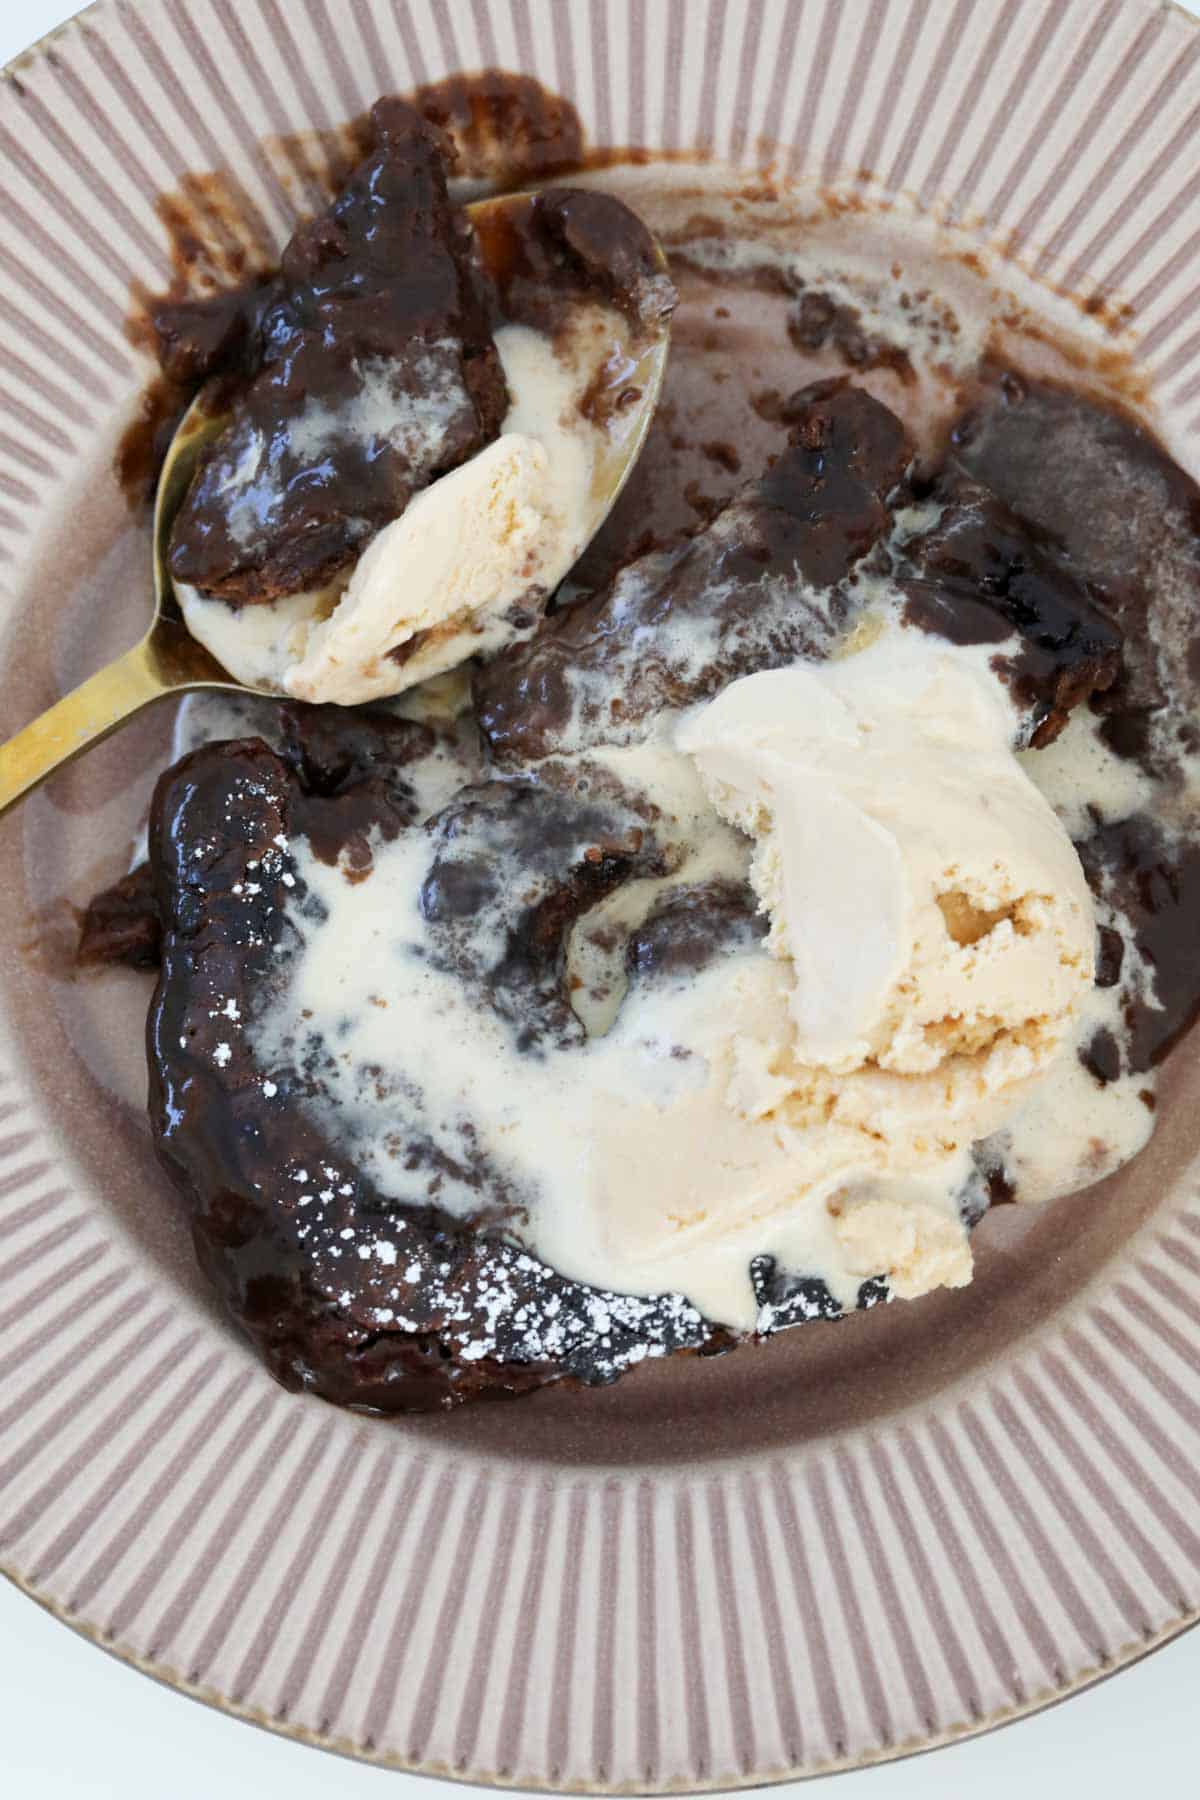 Ice cream swirled through chocolate hot pudding.